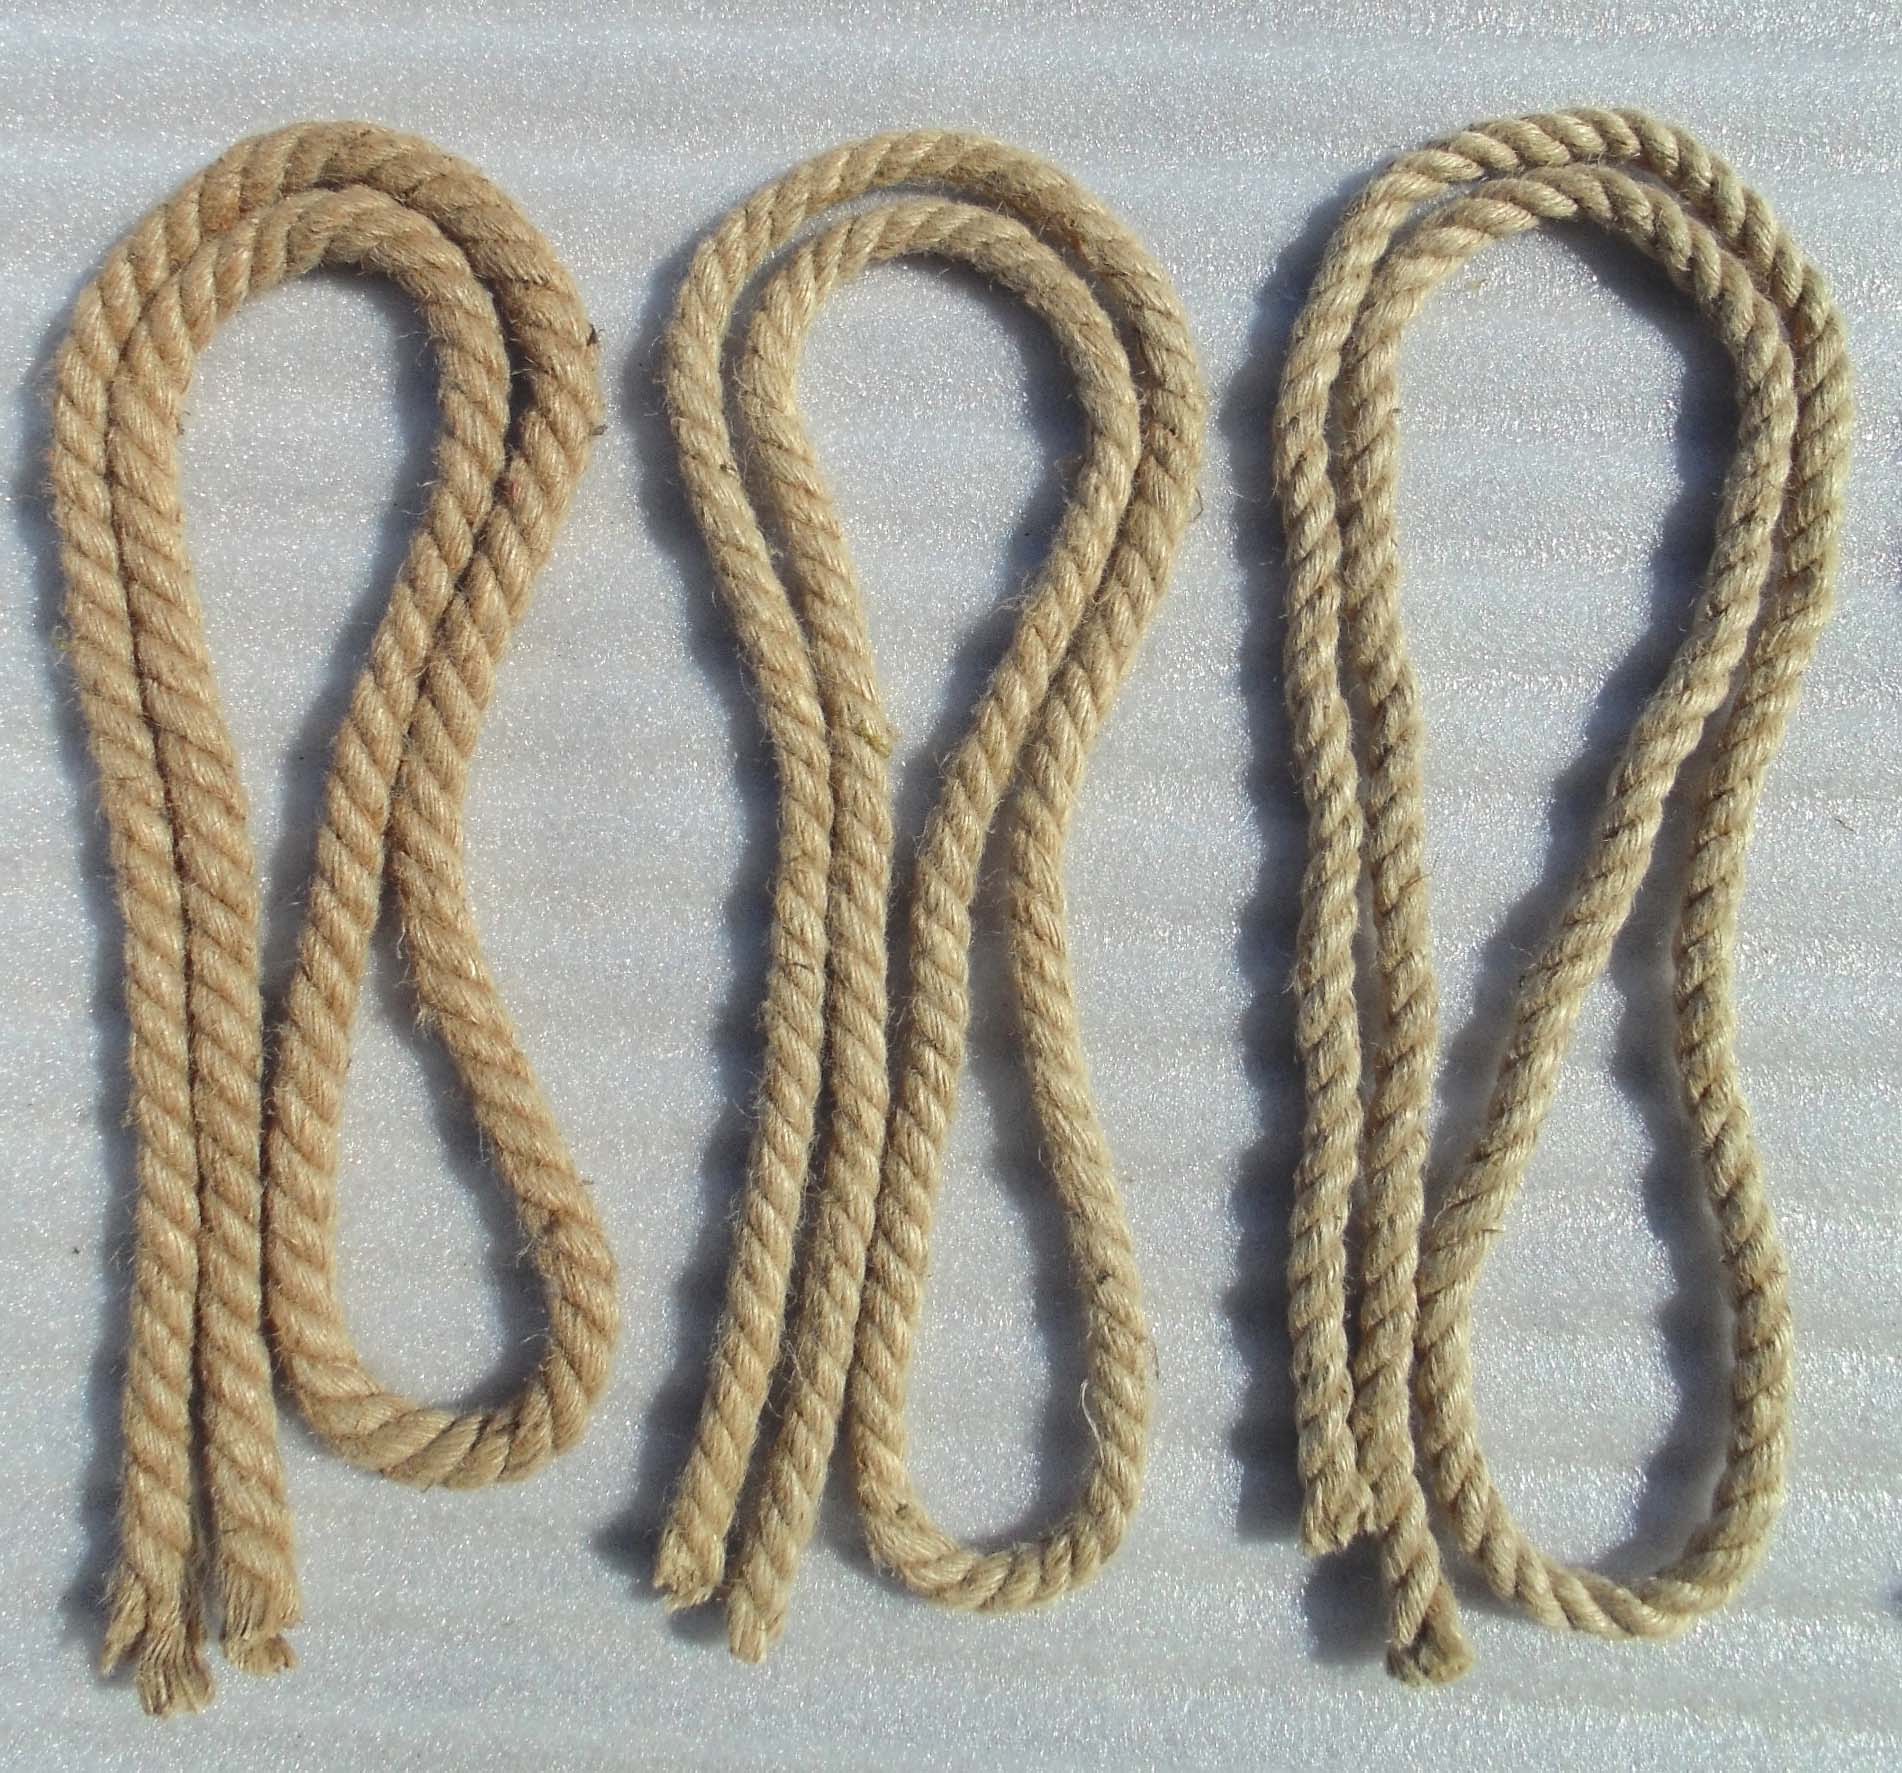 优质黄麻绳复古装饰粗细麻绳吊牌照片麻绳包装捆绑扎绳子